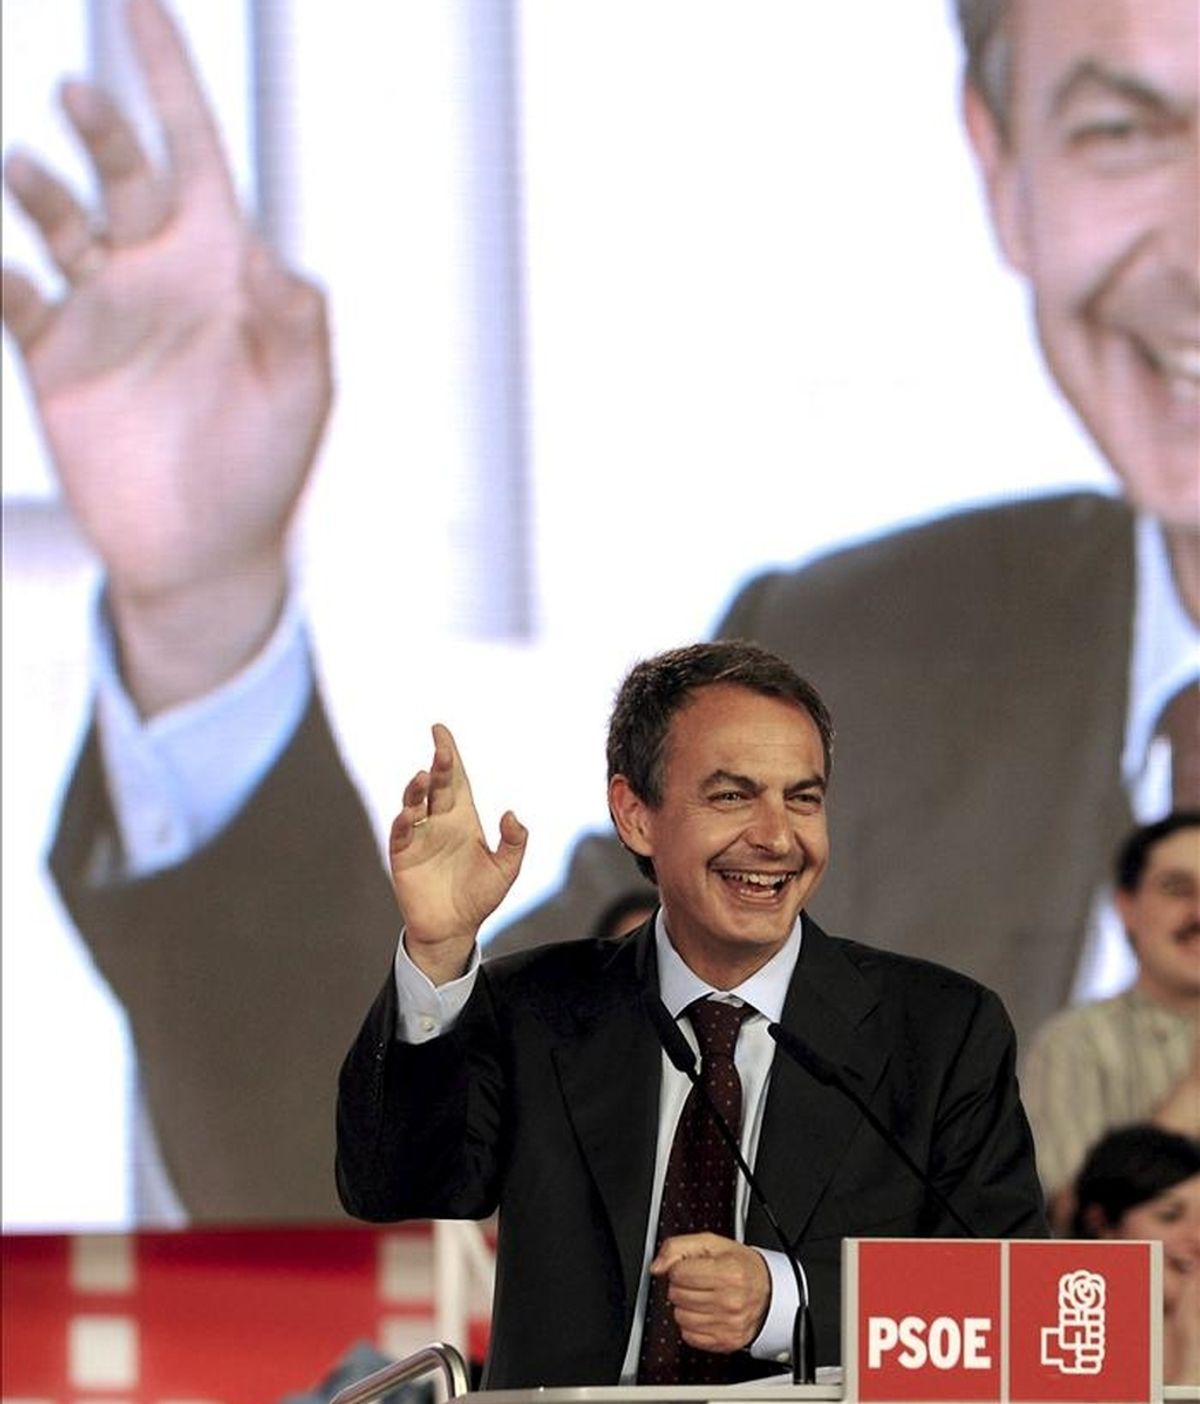 El presidente del Gobierno y secretario general del PSOE, José Luis Rodríguez Zapatero, durante una intervención en un mitin de campaña. EFE/Archivo